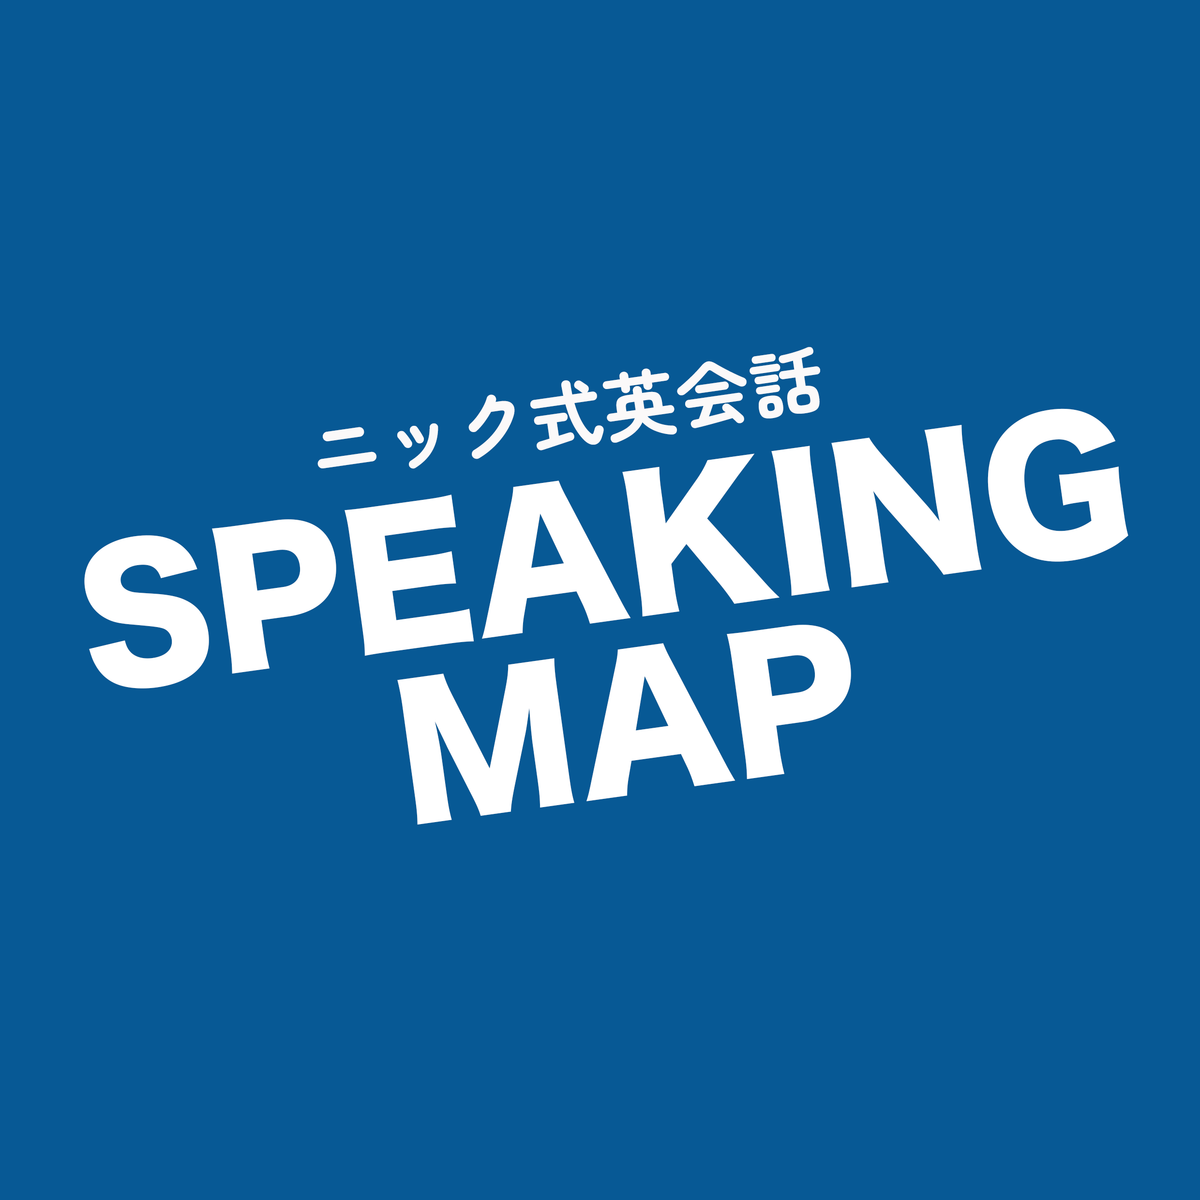 ニック式英会話 SPEAKING MAP | getfitwith180.com